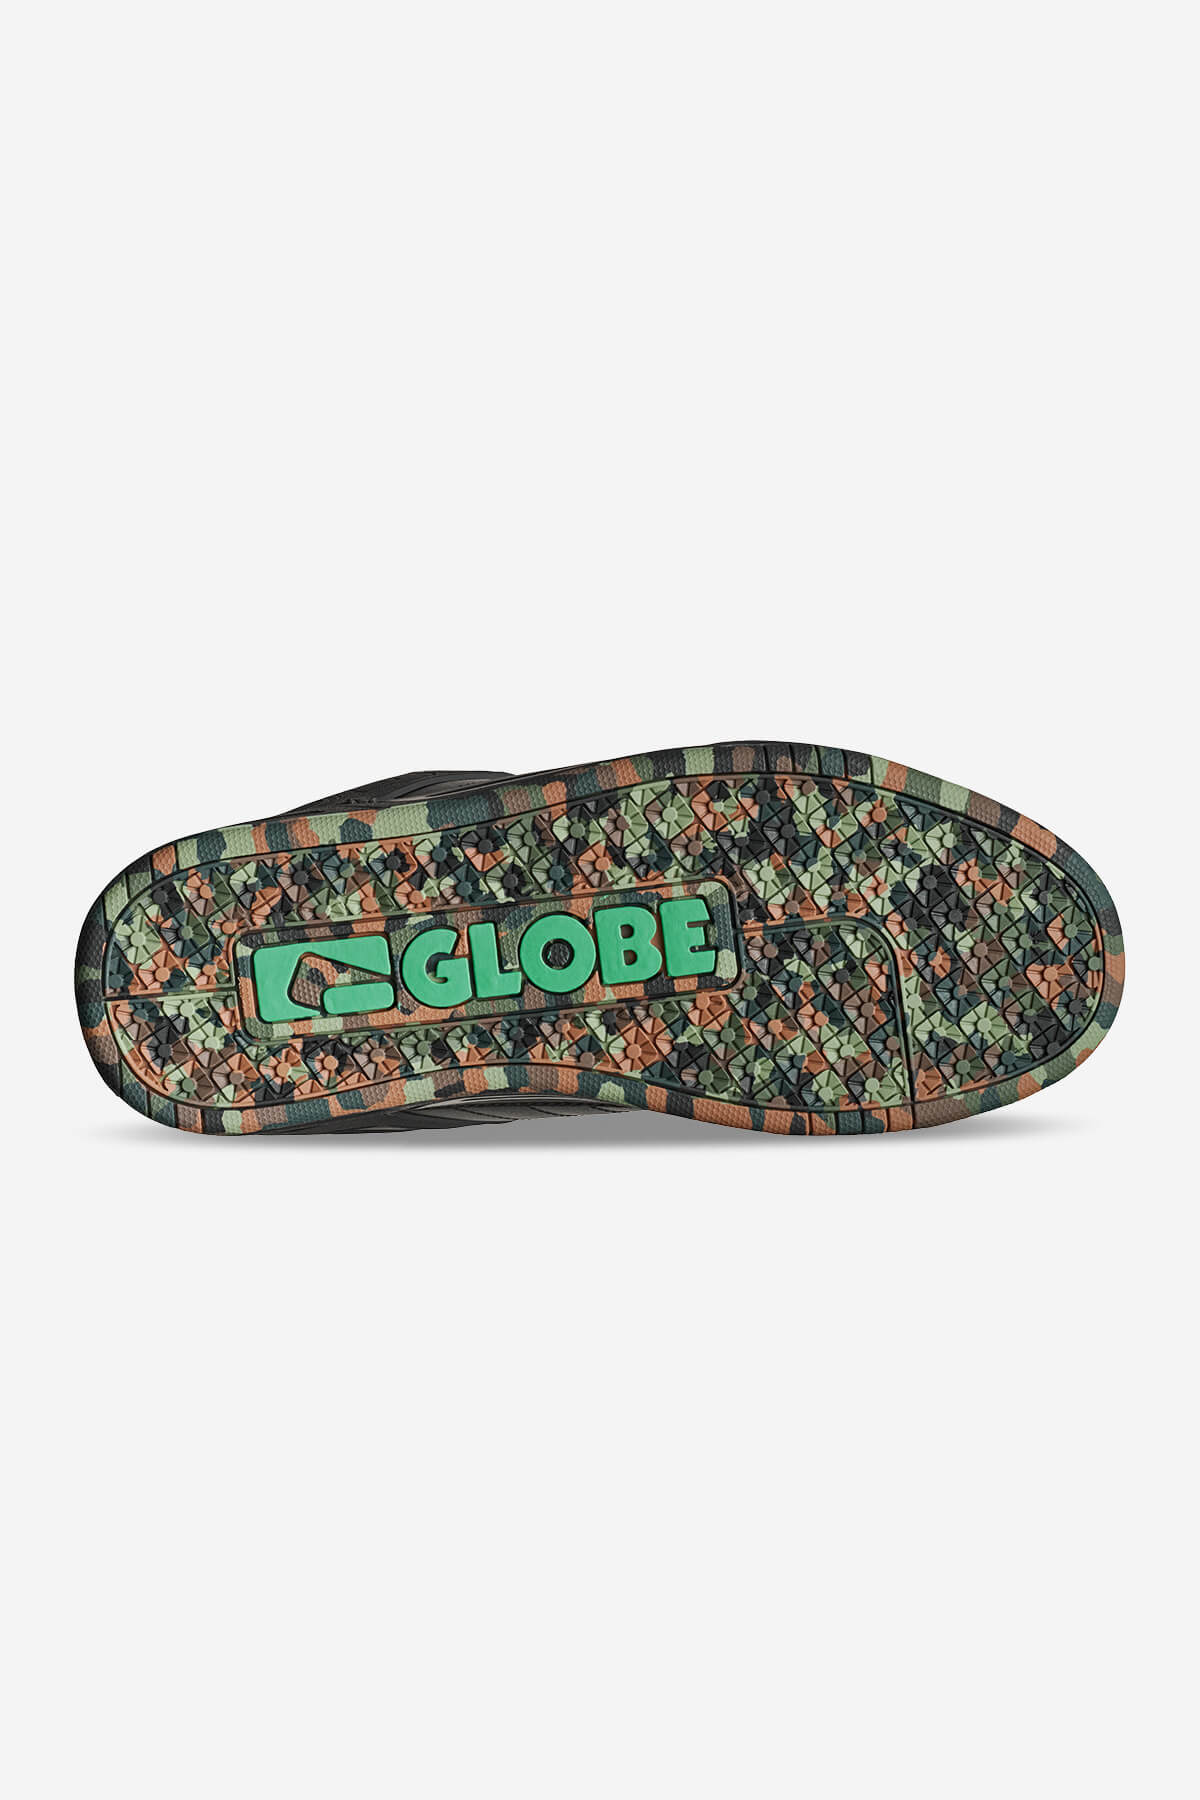 Globe - Tilt - Black/Green/Mosaico - skateboard Scarpe